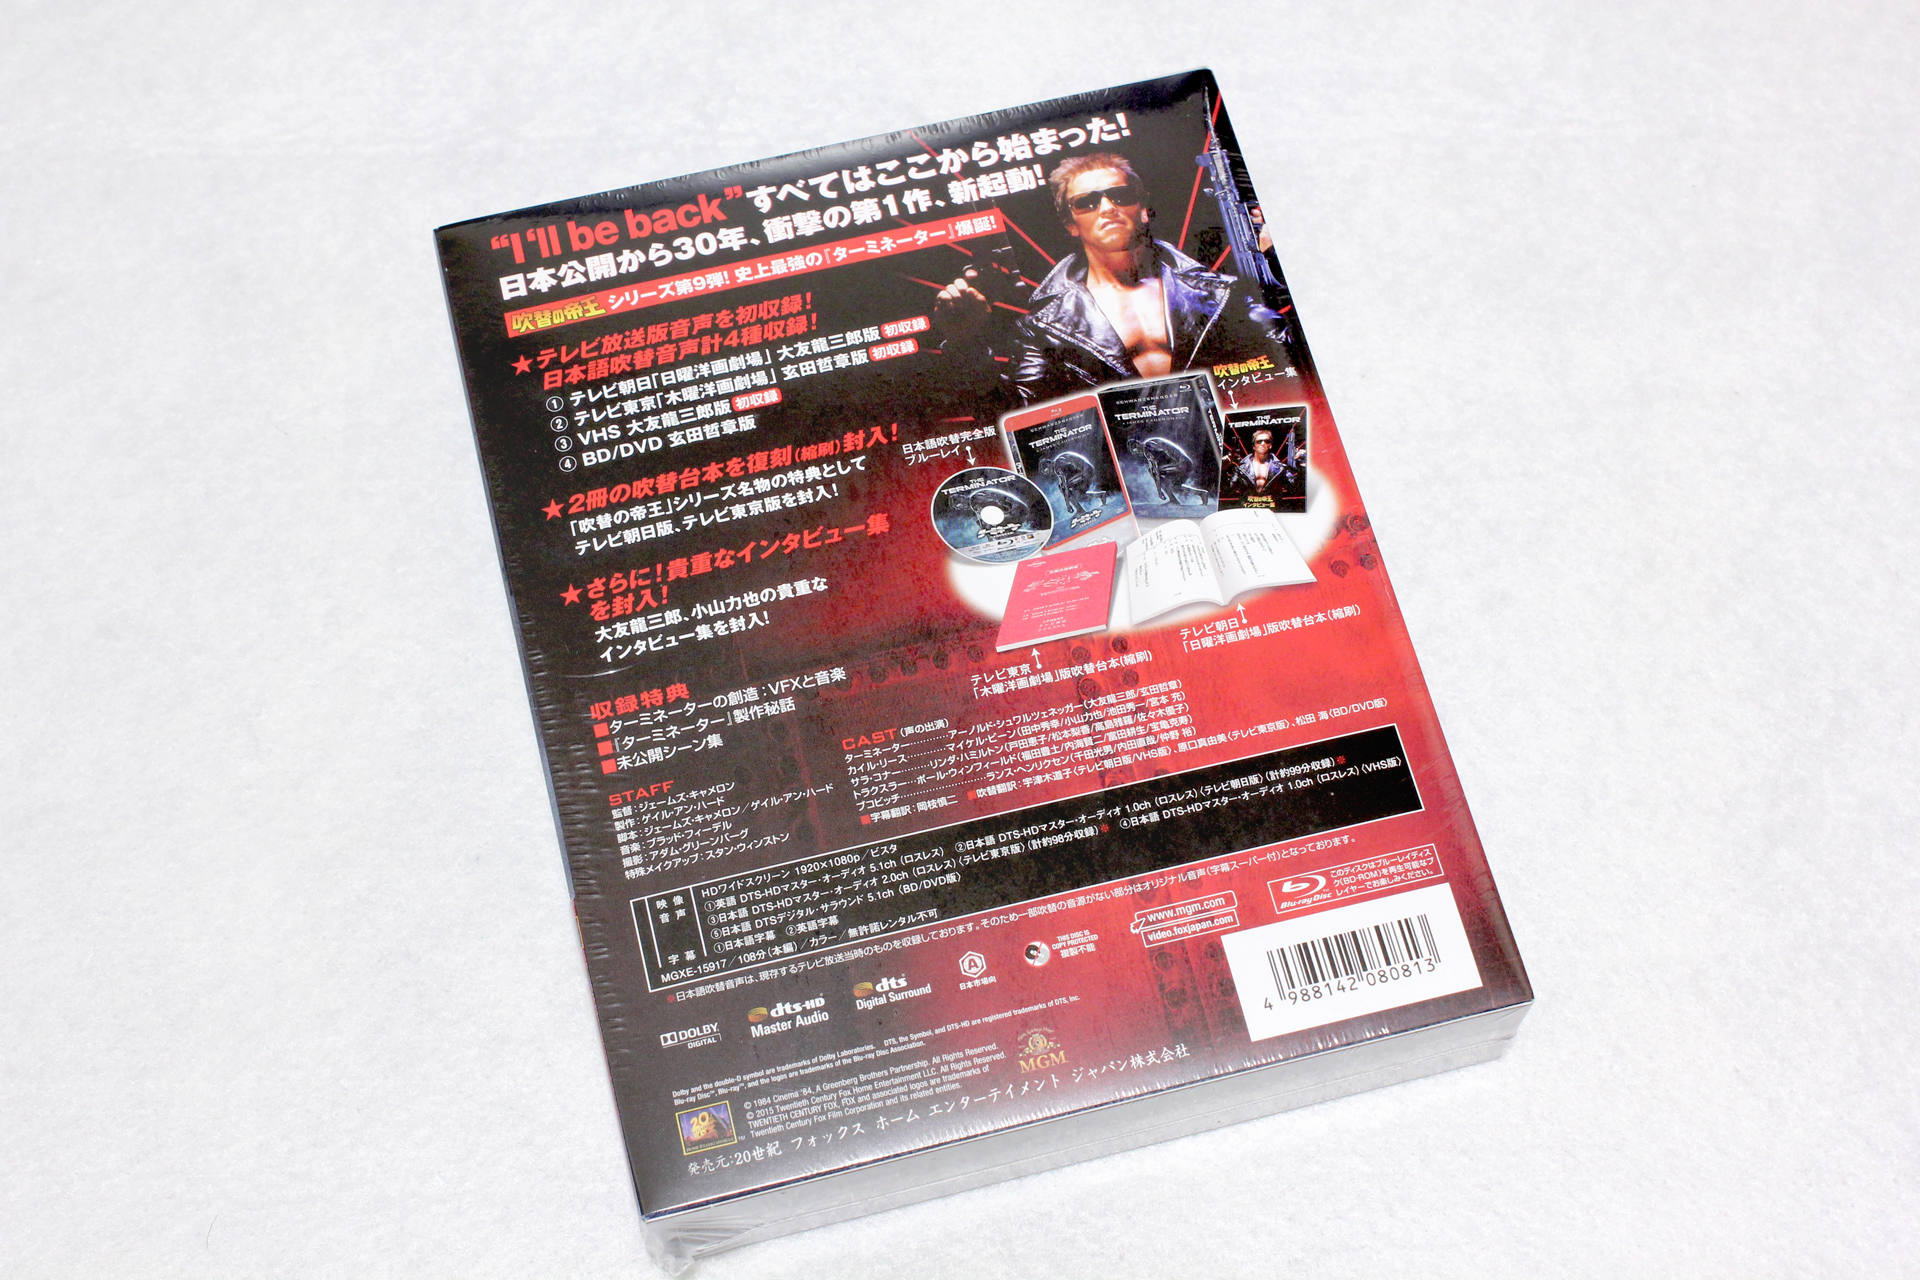 吹替の帝王「ターミネーター(日本語吹替完全版)コレクターズ・ブルーレイBOX」が届いたので記念写真[BD][Blu-ray] | 録画地獄